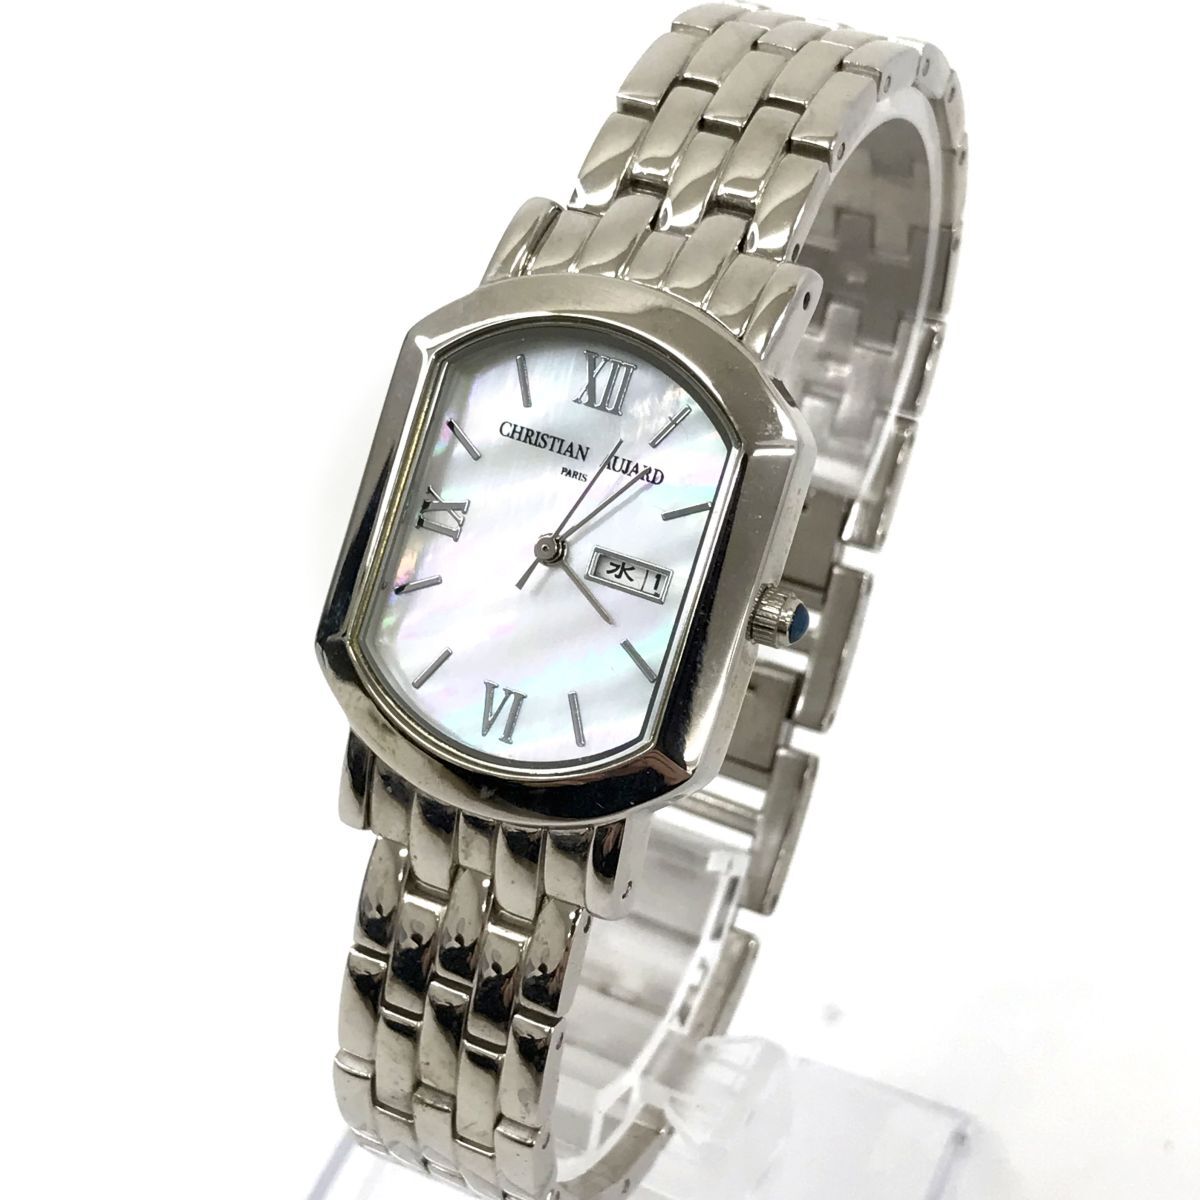 CHRISTIAN AUJARD Christian oja-ru наручные часы кварц аналог ракушка серебряный календарь модный батарейка заменена рабочее состояние подтверждено 